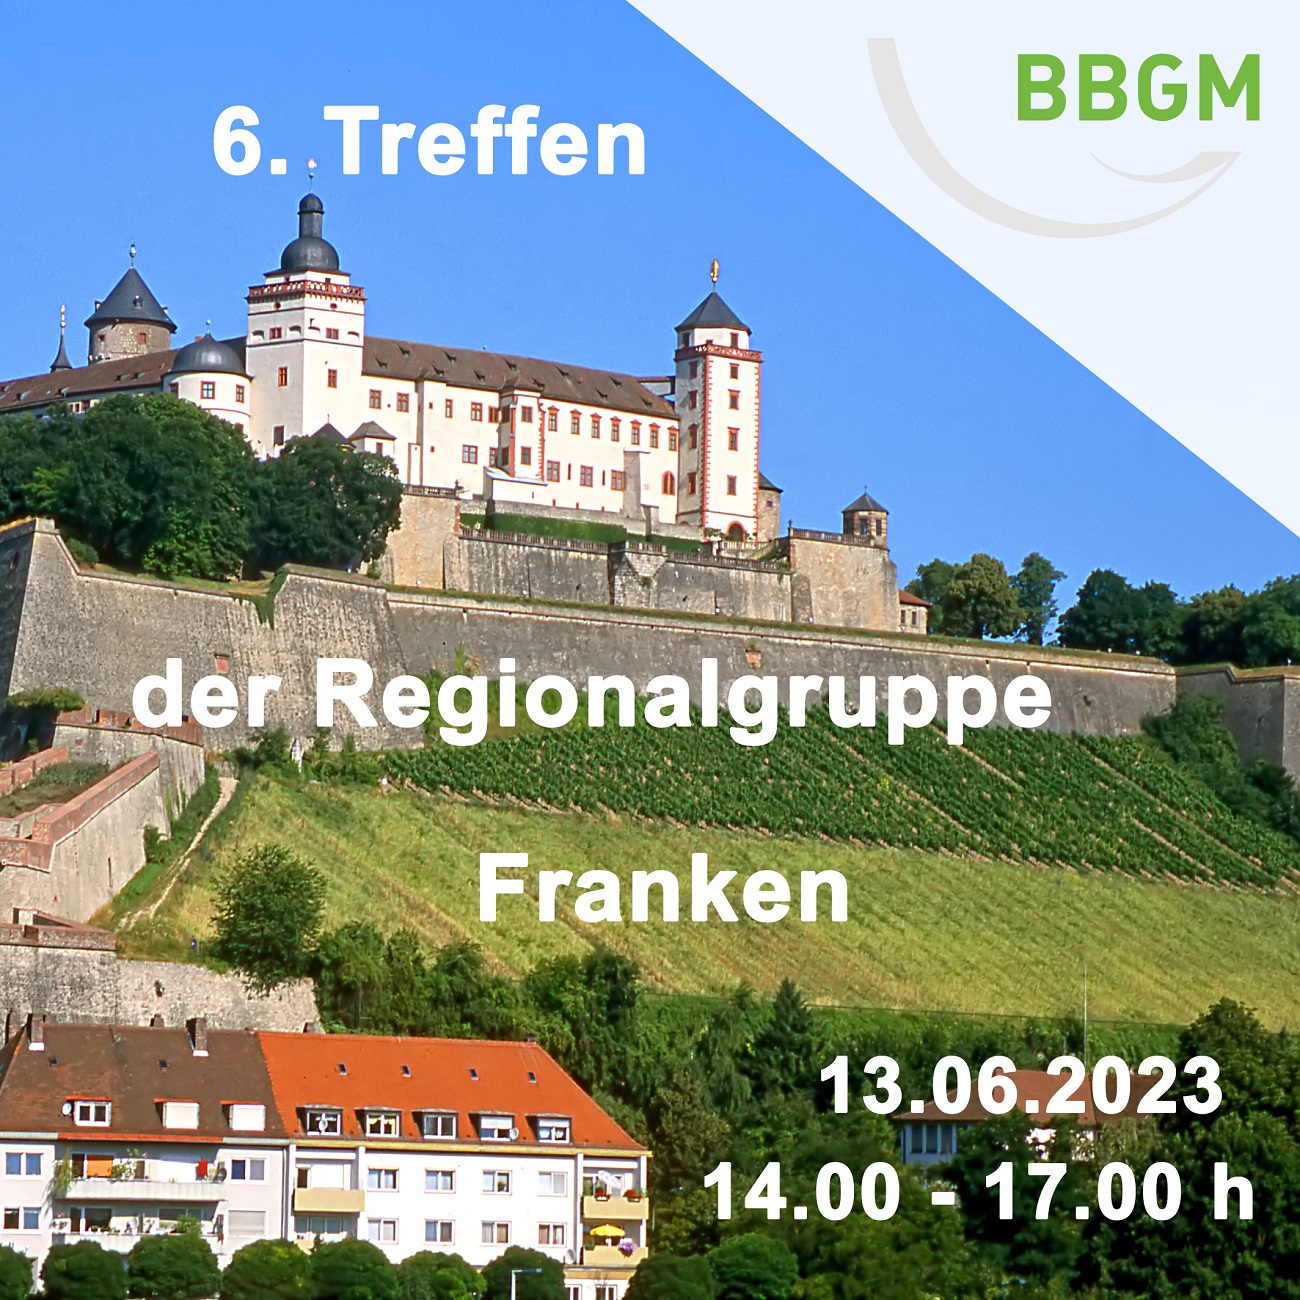 6. Treffen der Regionalgruppe Franken am 13.06.2023 von 14 bis 17 h